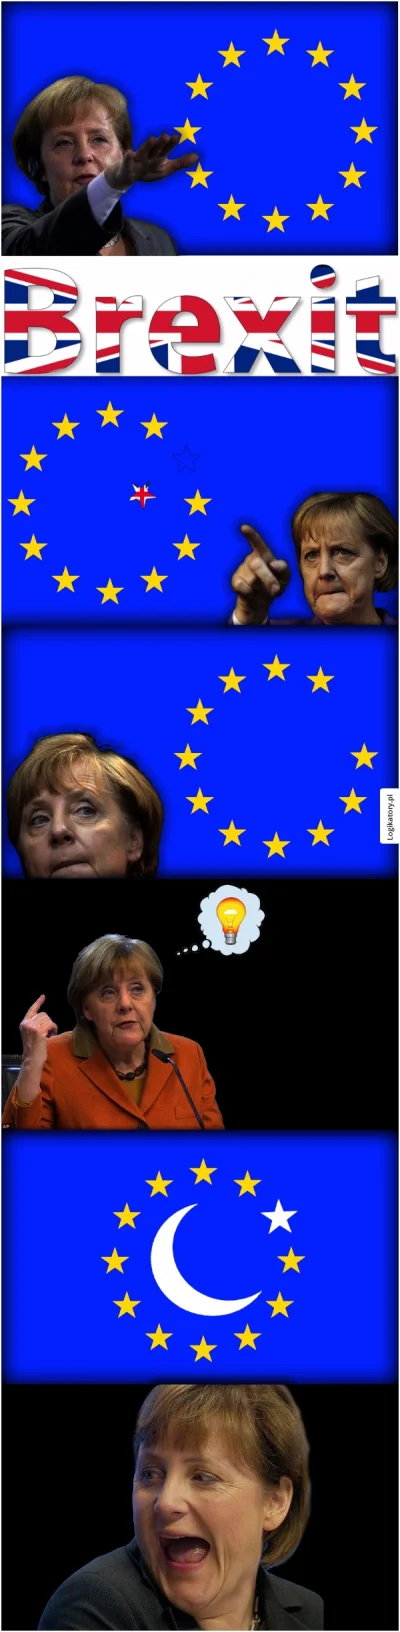 4pietrowydrapaczchmur - Mały bonus. "Logika Merkel"
SPOILER